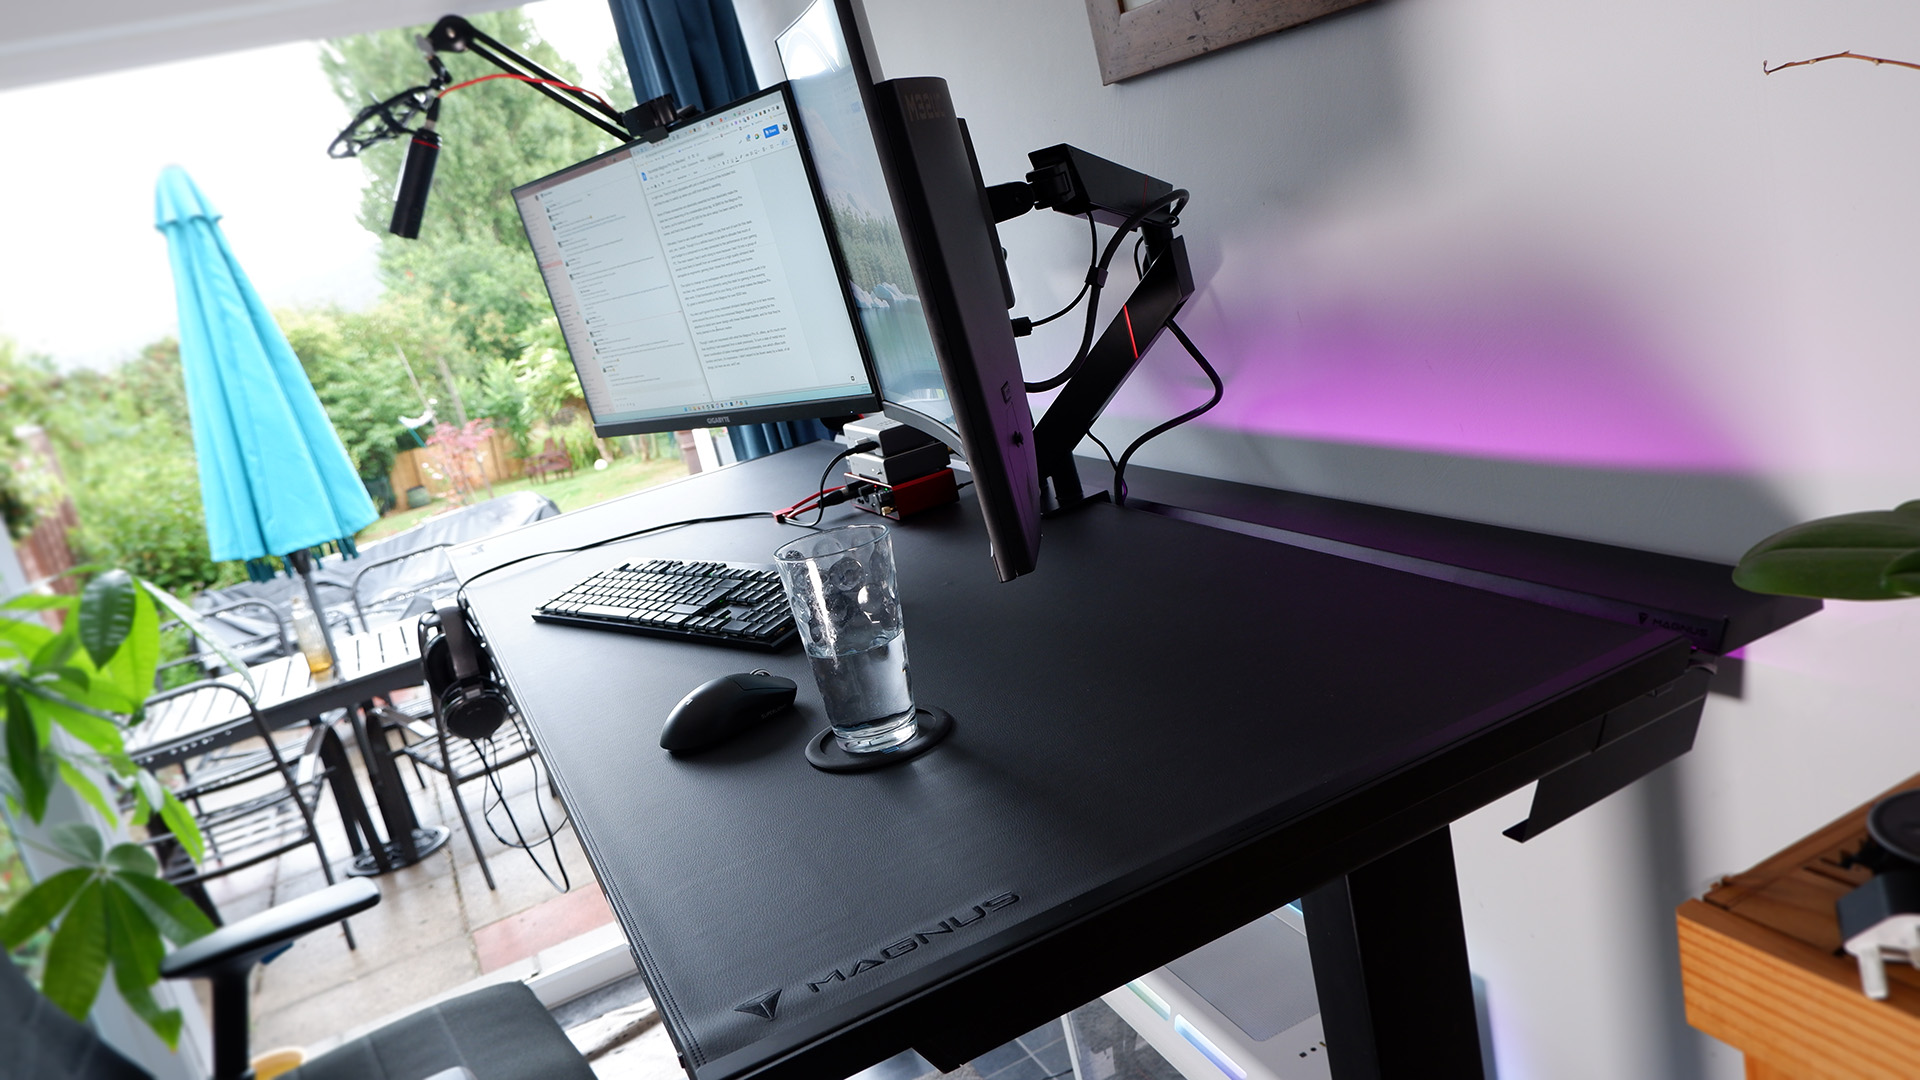 Inside Look  Secretlab MAGNUS Pro Sit-to-Stand Metal Desk 